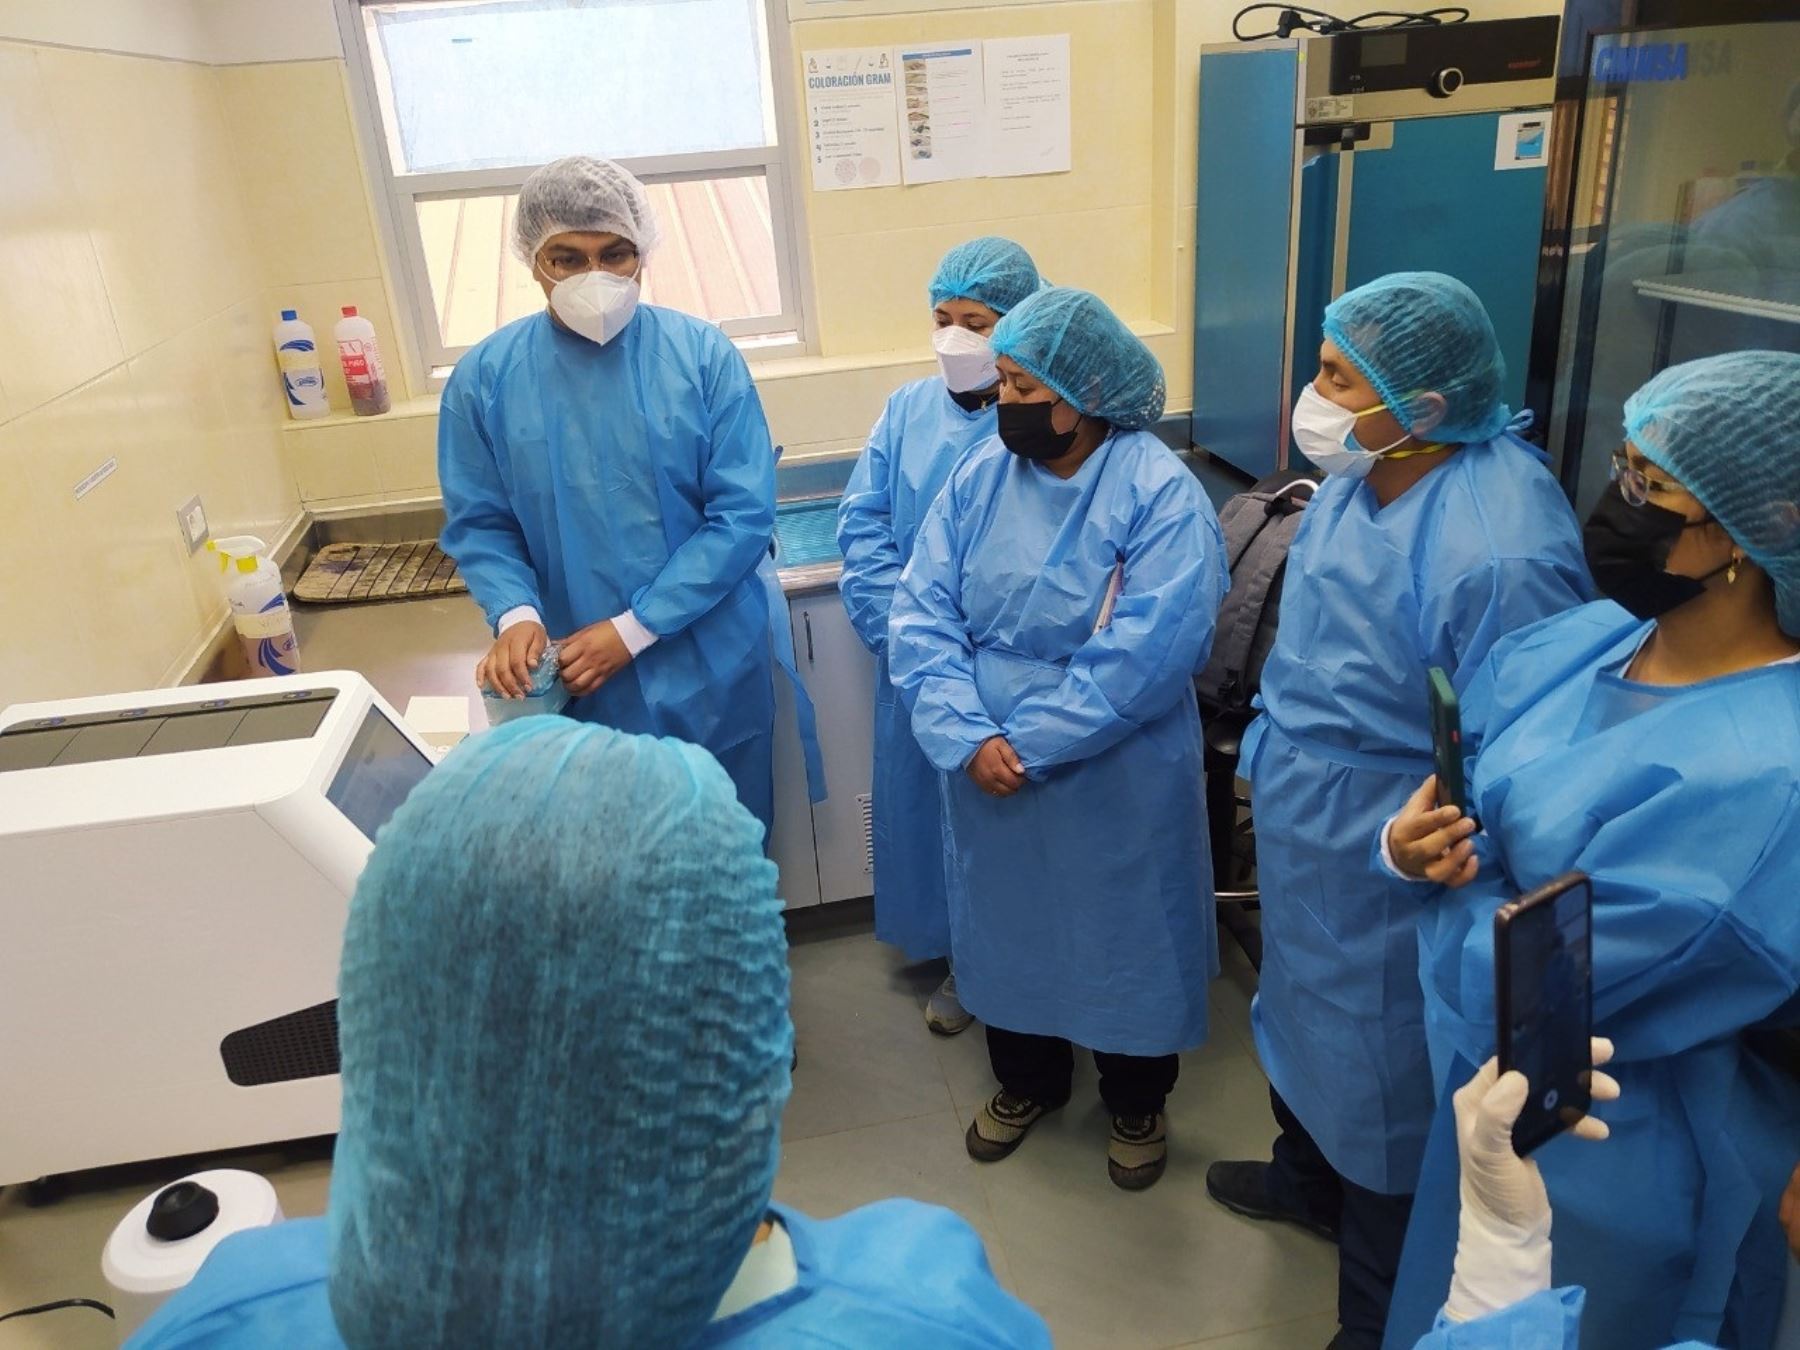 El Instituto Nacional de Salud instaló un laboratorio de diagnóstico molecular del Sars-CoV-2 en la ciudad de Huamachuco que permitirá detectar casos de covid-19 en la provincia de Santiago de Chuco, región La Libertad. ANDINA/Difusión